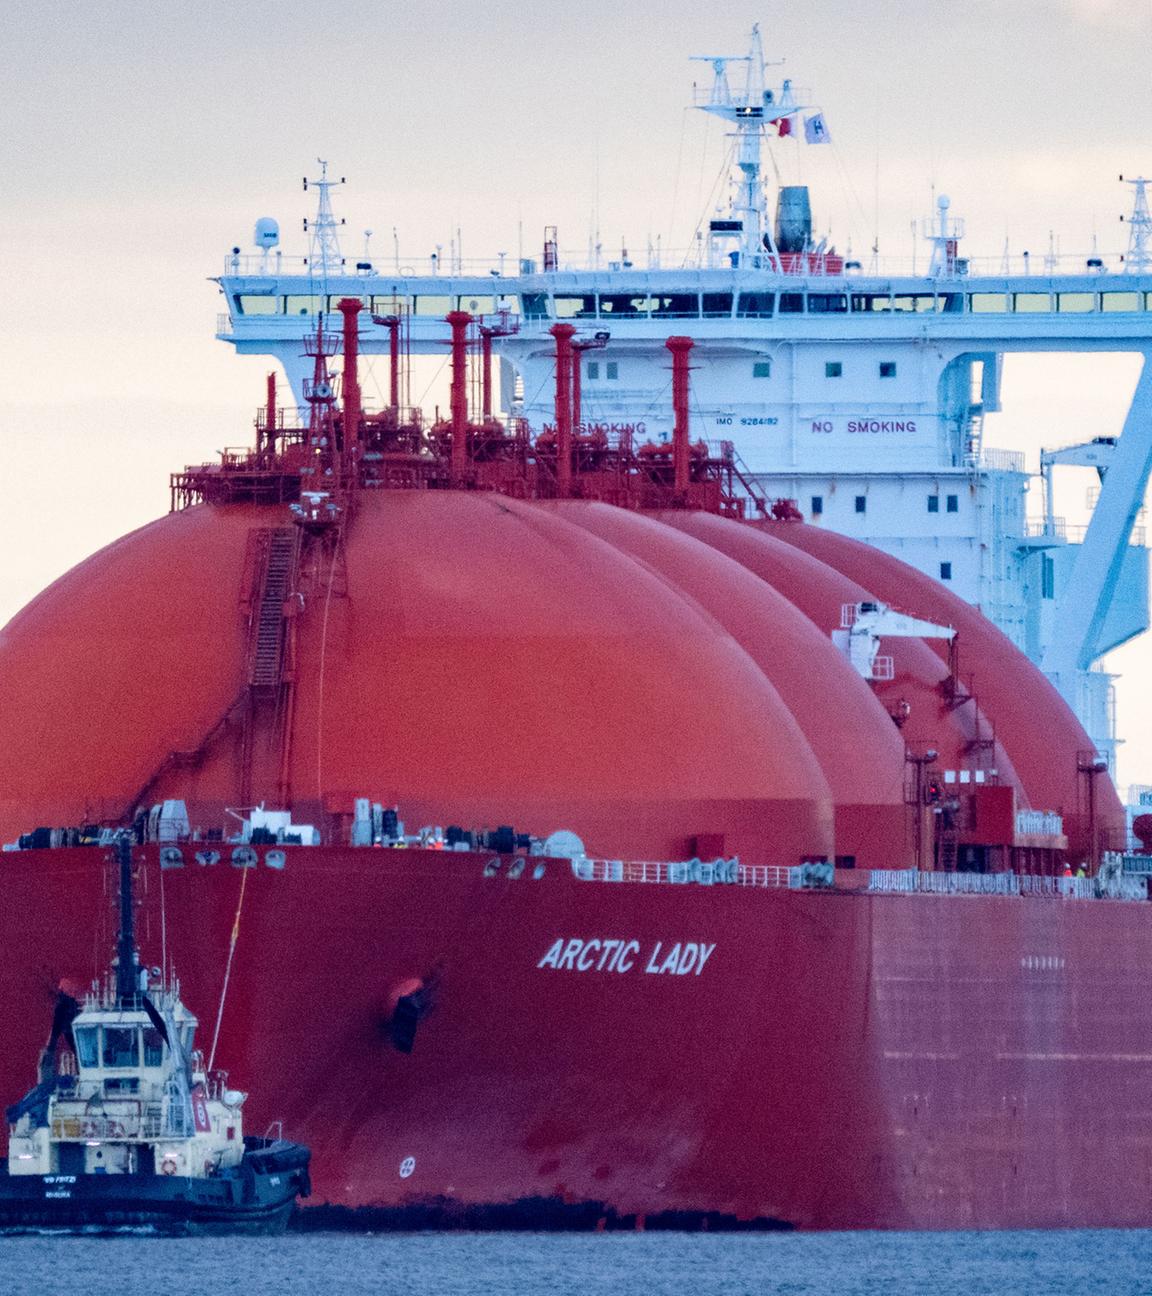 Von Schleppern begleitet transportiert der LNG-Tanker "Arctic Lady" eine Ladung LNG zum Energie-Terminal "Deutsche Ostsee"